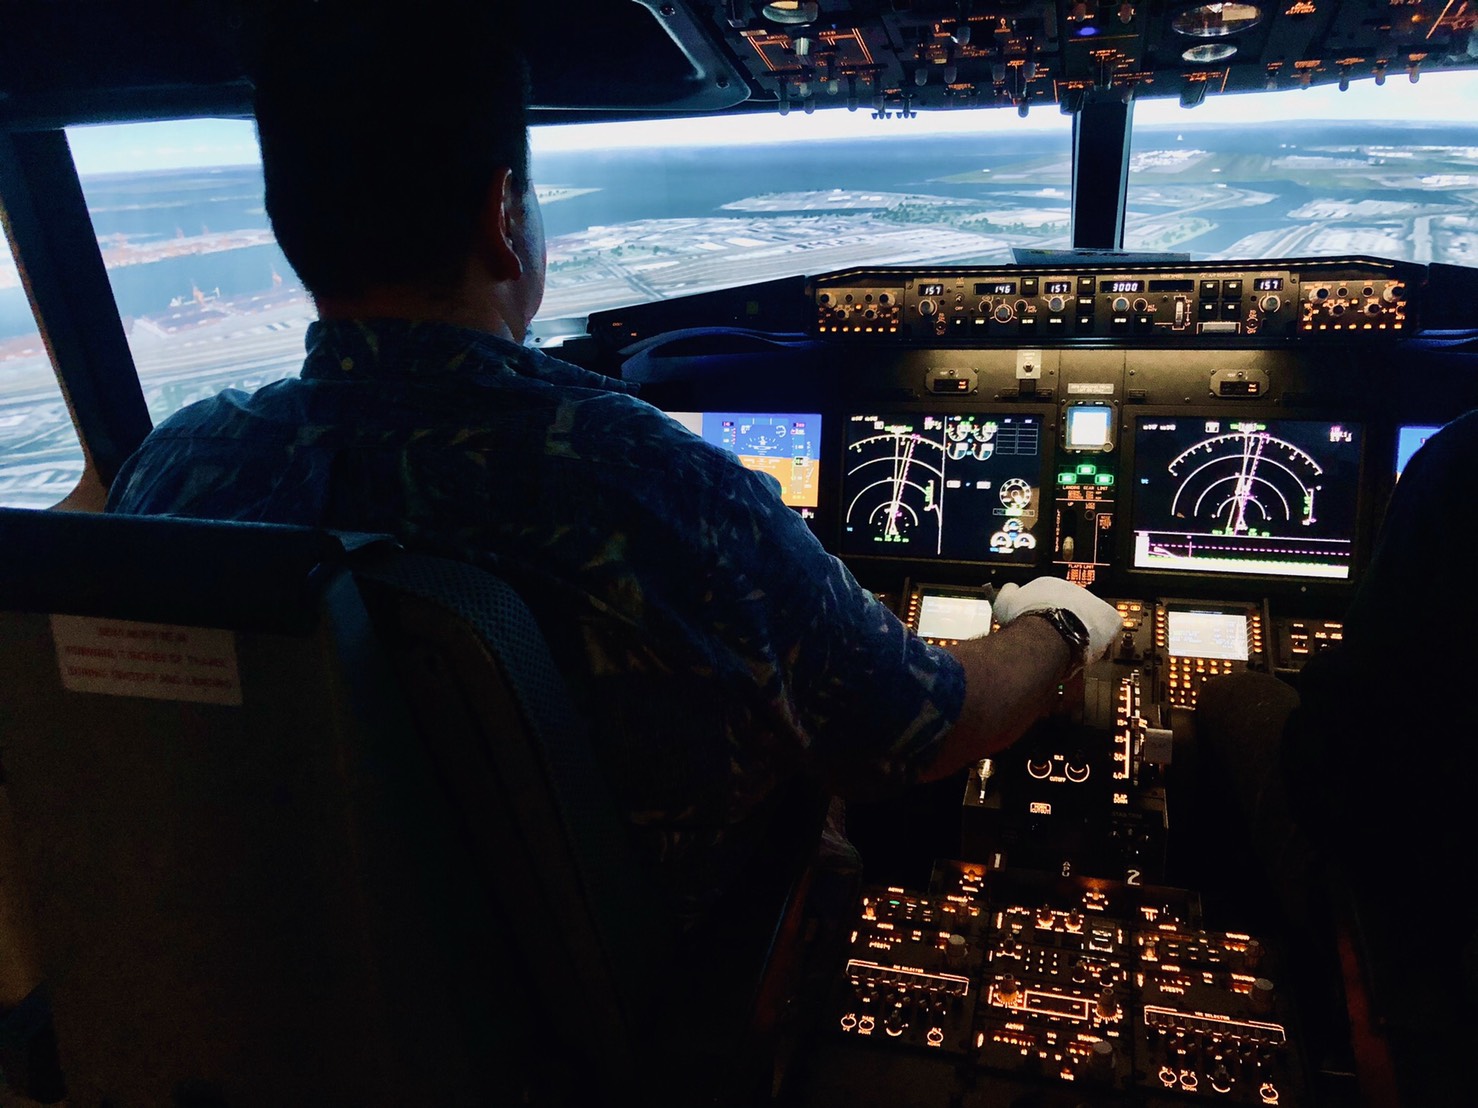 羽田でフライトの体験ができる「LUXURY FLIGHT」 | 羽田・セントレアでフライトシミュレーターを体験するなら「LUXURY FLIGHT」